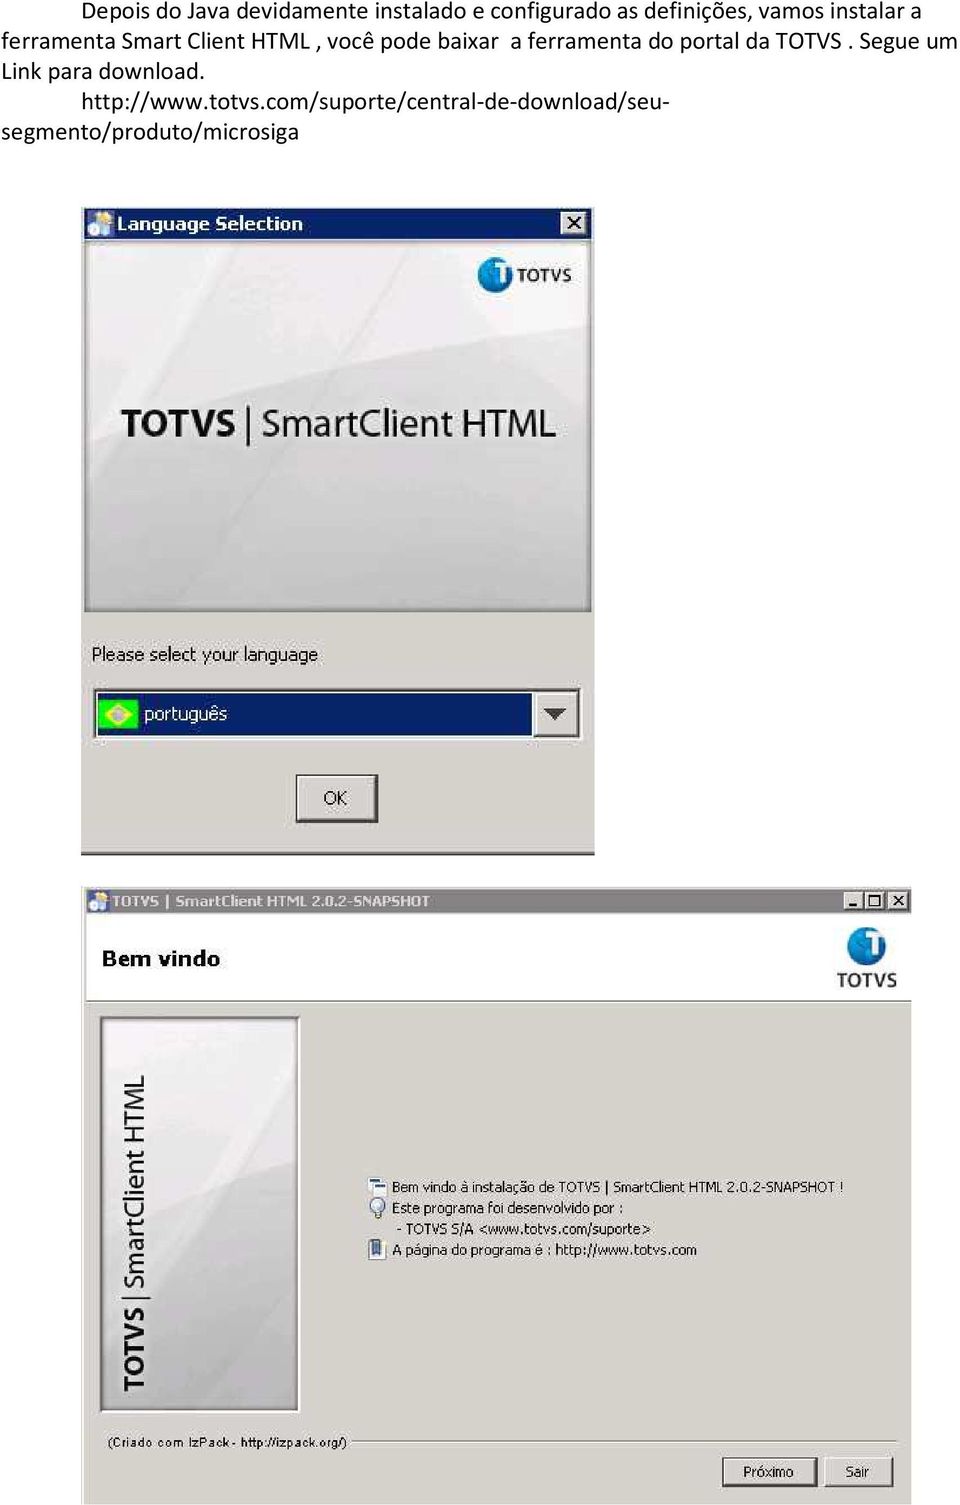 ferramenta do portal da TOTVS. Segue um Link para download.